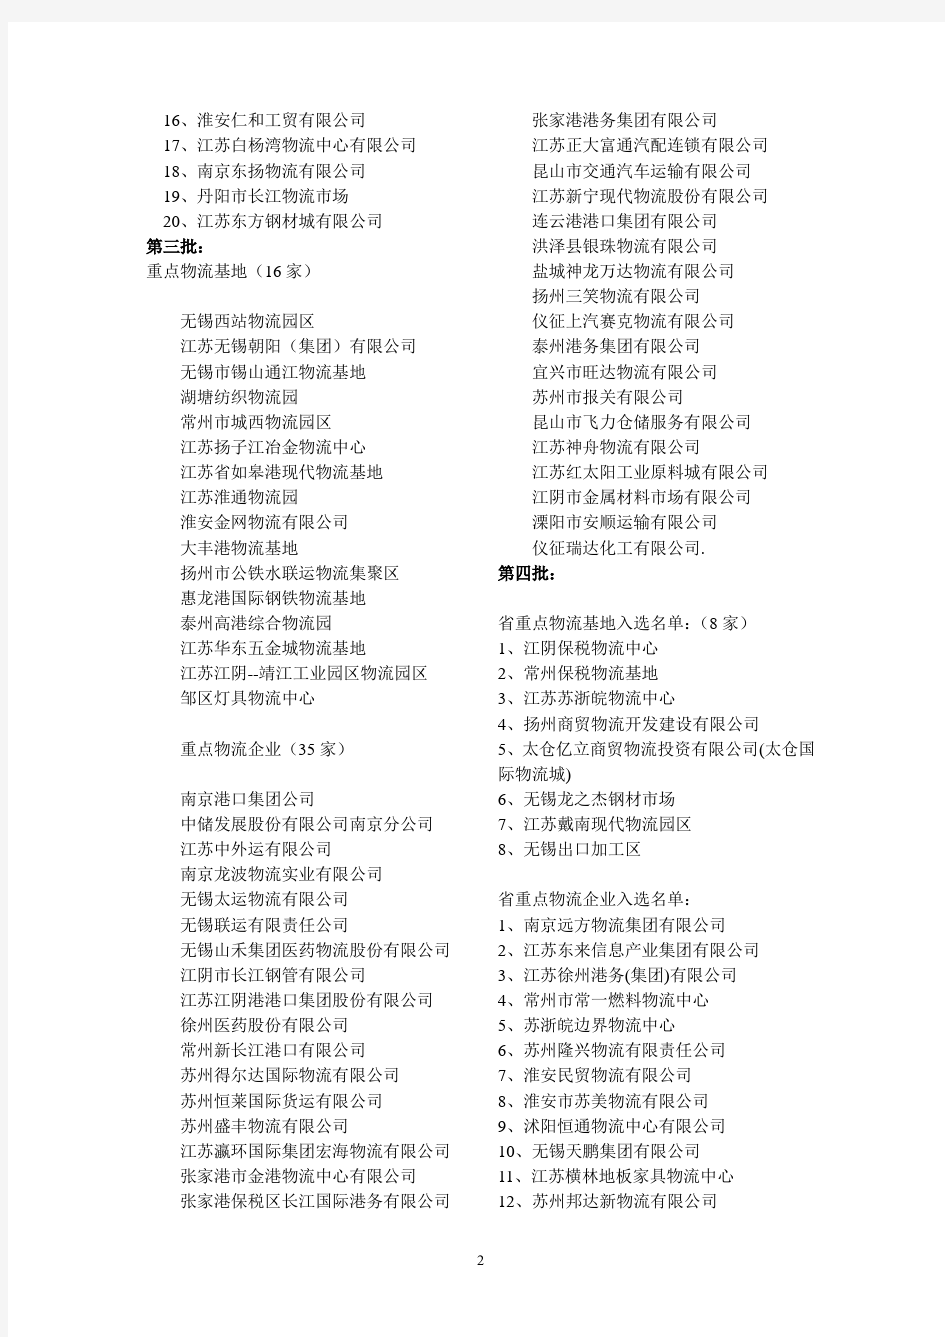 第1第6批江苏省物流基地与重点物流企业名单